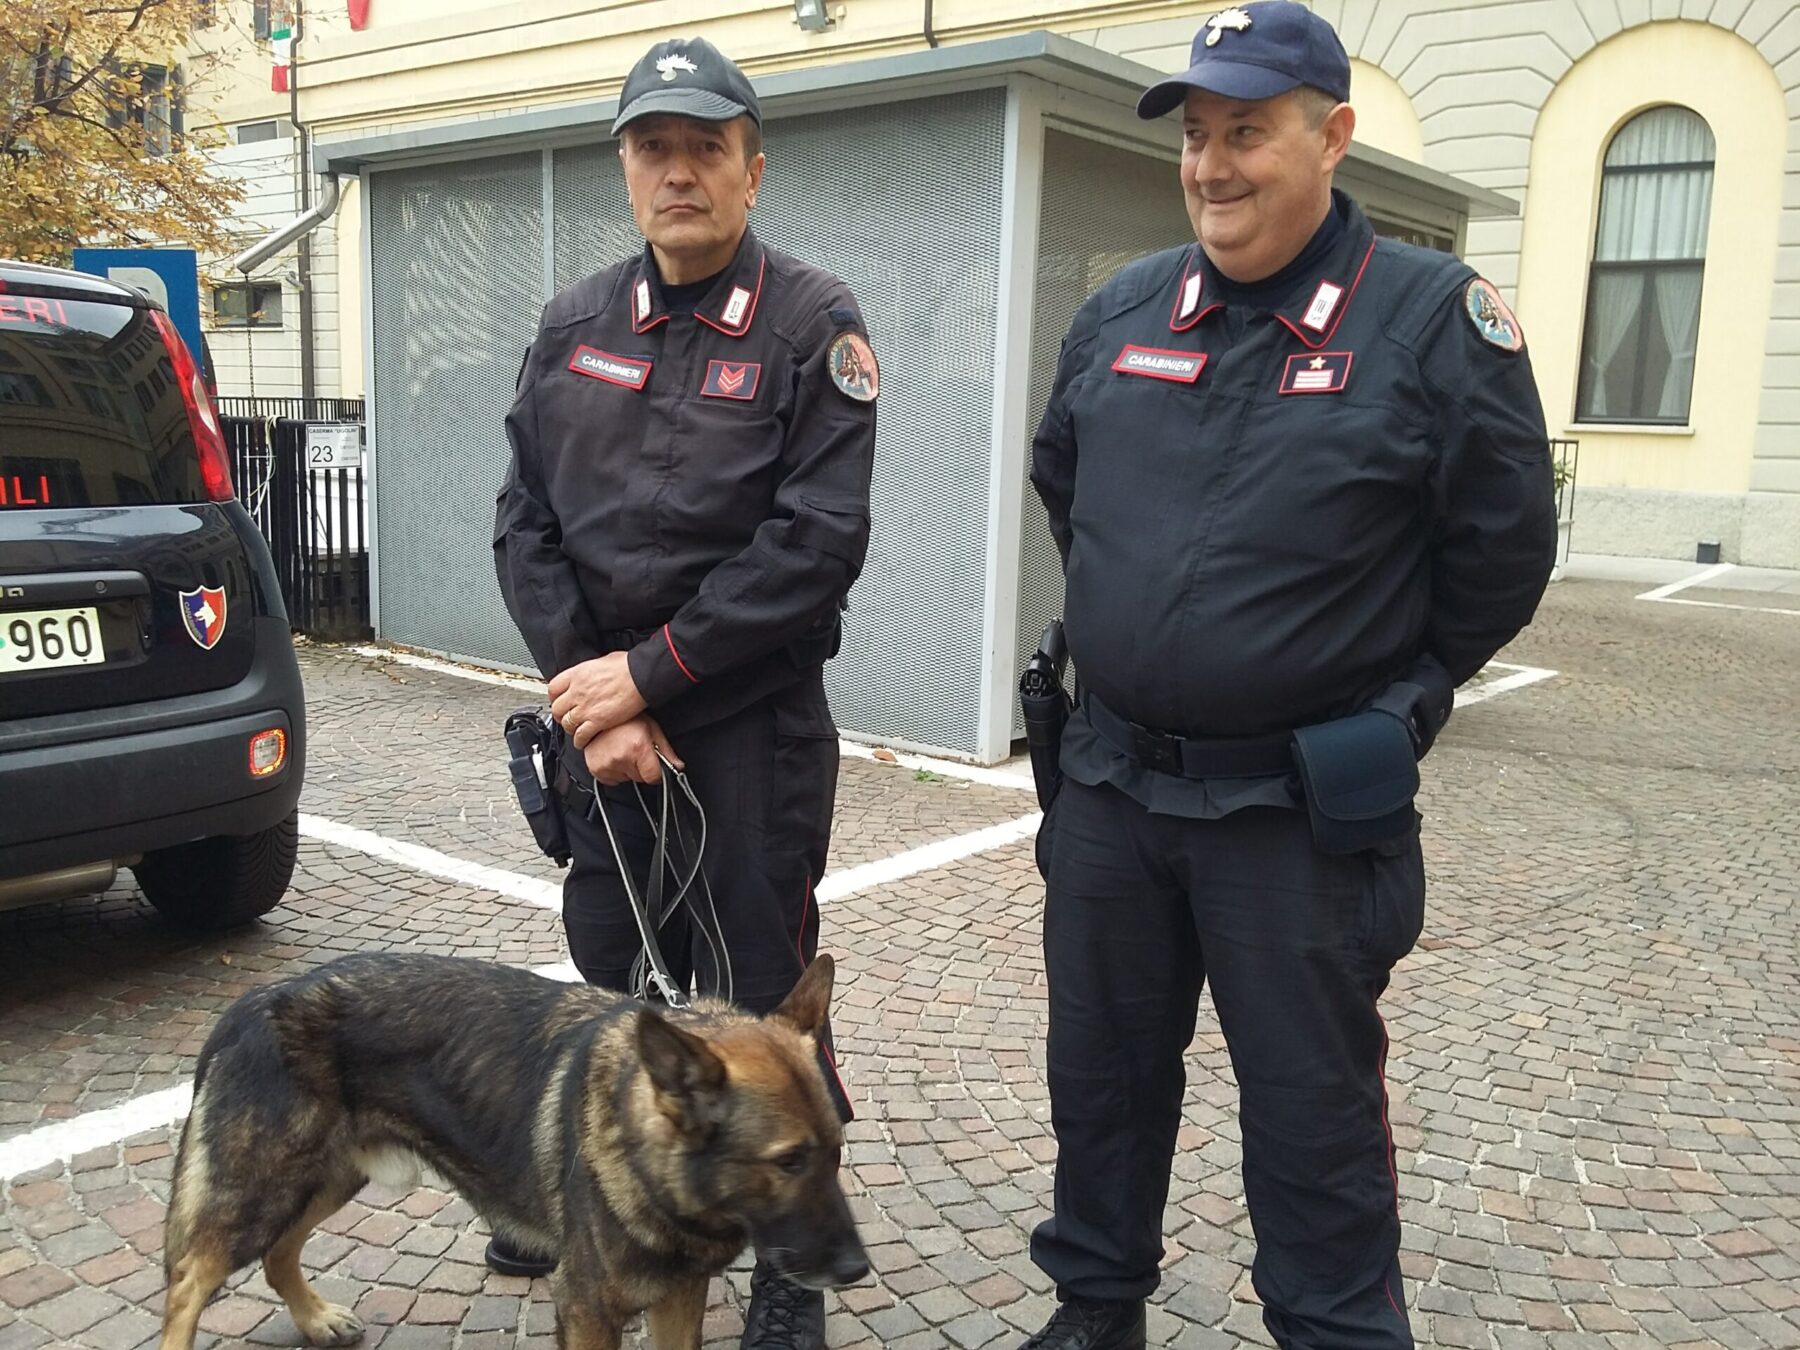 ris,carabinieri. Dai Carabinieri di via Moscova con la Giulietta, Dusty e i Ris - 08/11/2017